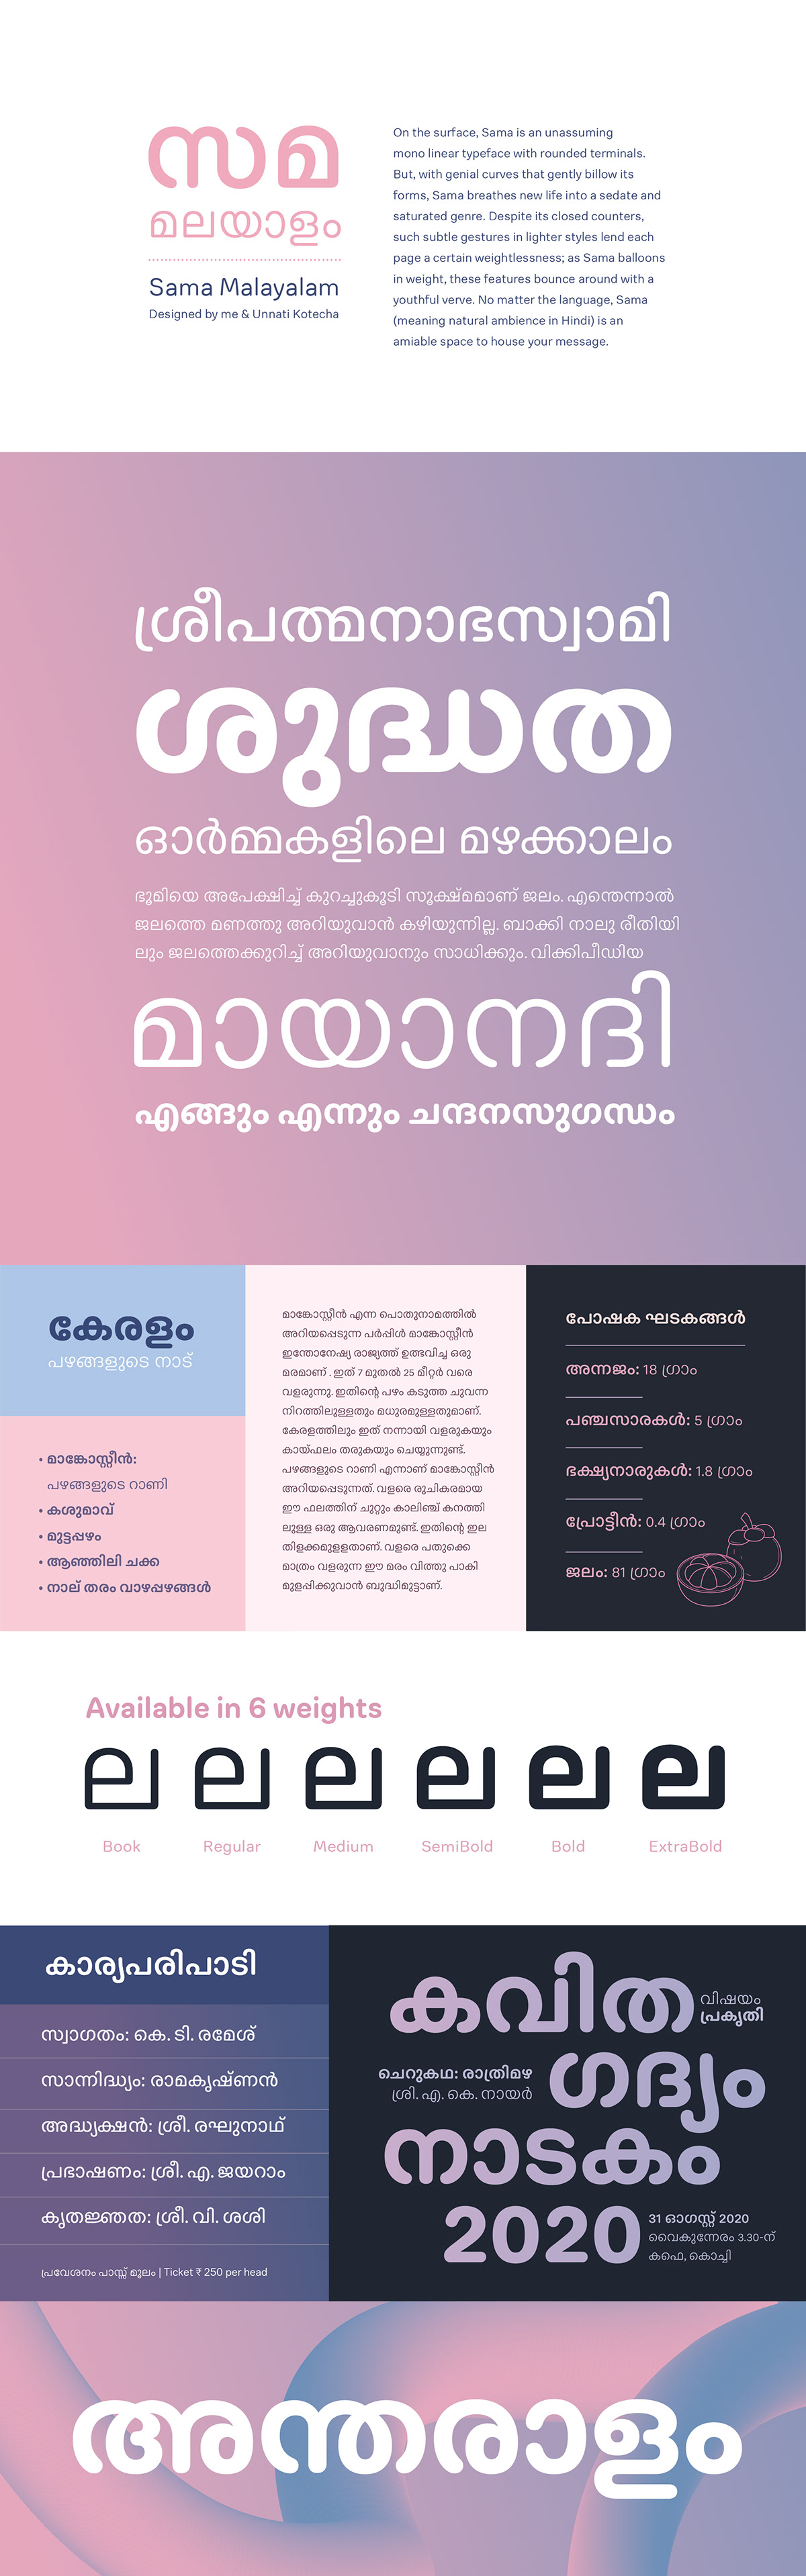 Ek Type kerala malayalam Malayalam font Malayalam type design Malayalam typeface Malayalam Typography Rounded malayalam font Sama Malayalam type design